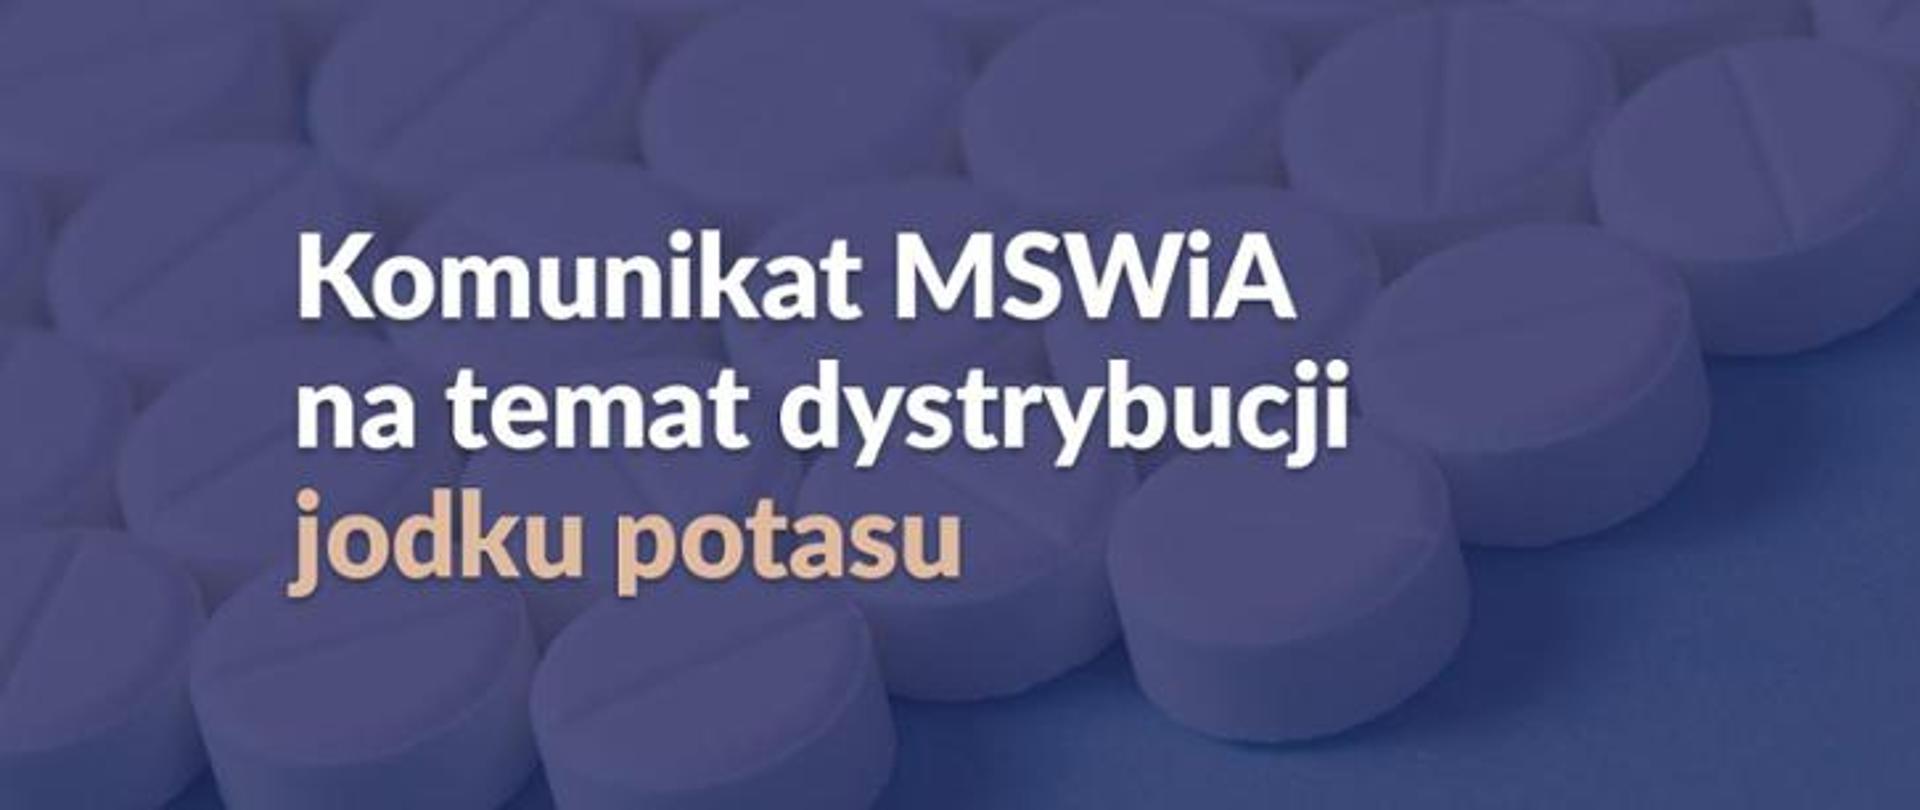 Biały napis "Komunikat MSWiA na temat dystrybucji jodku potasu" na granatowym tle, na którym widoczne są tabletki.